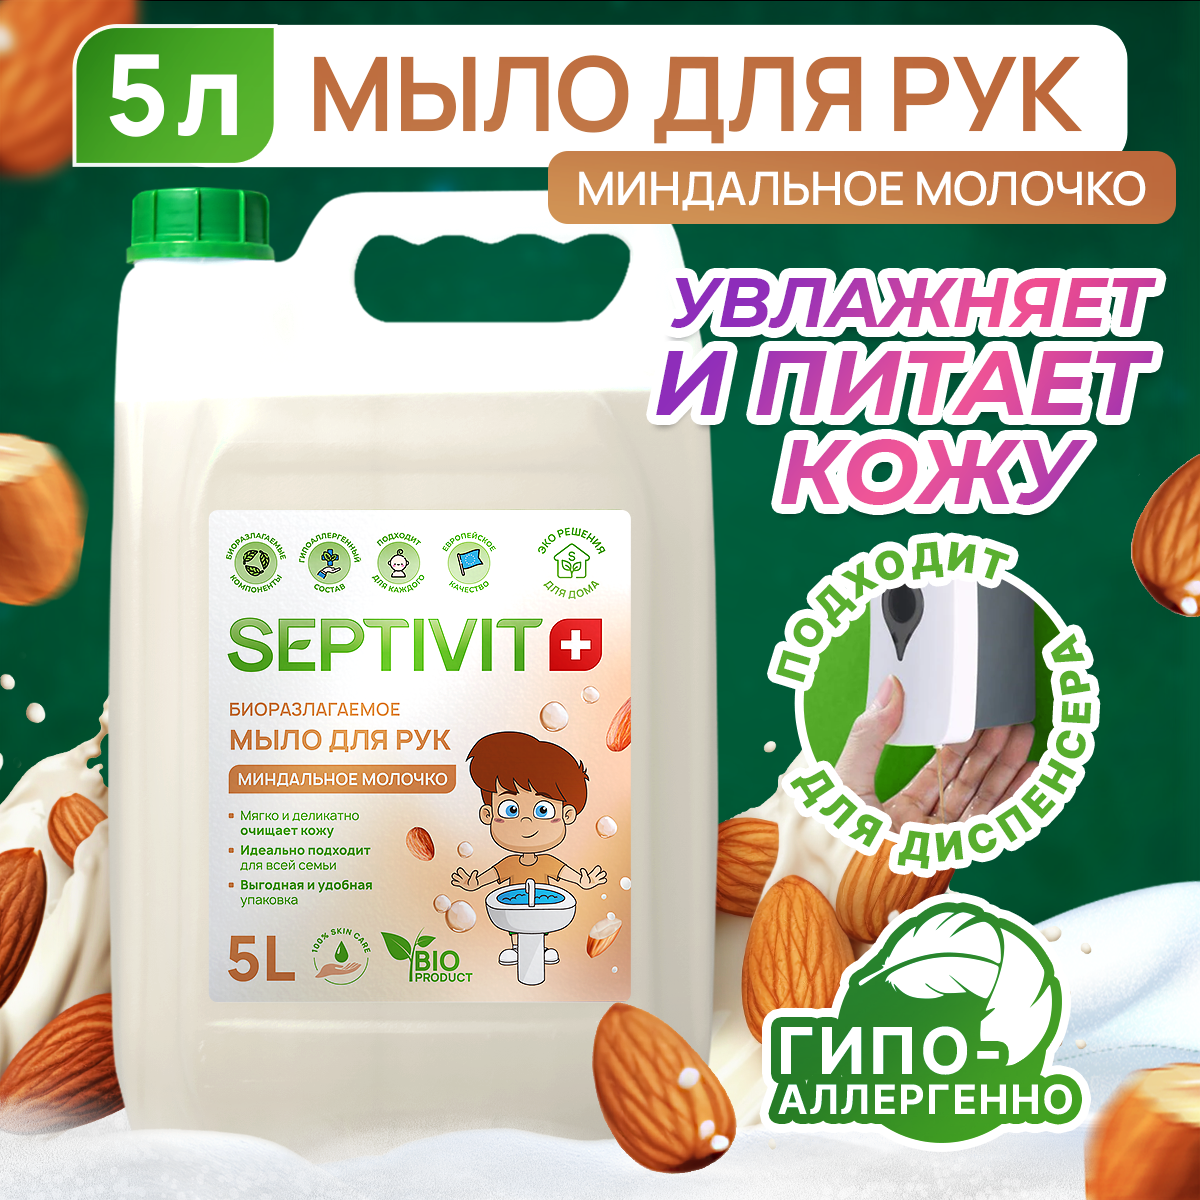 Жидкое мыло для рук SEPTIVIT Premium / Мыло туалетное жидкое Септивит / Детское мыло Миндальное молочко 5л